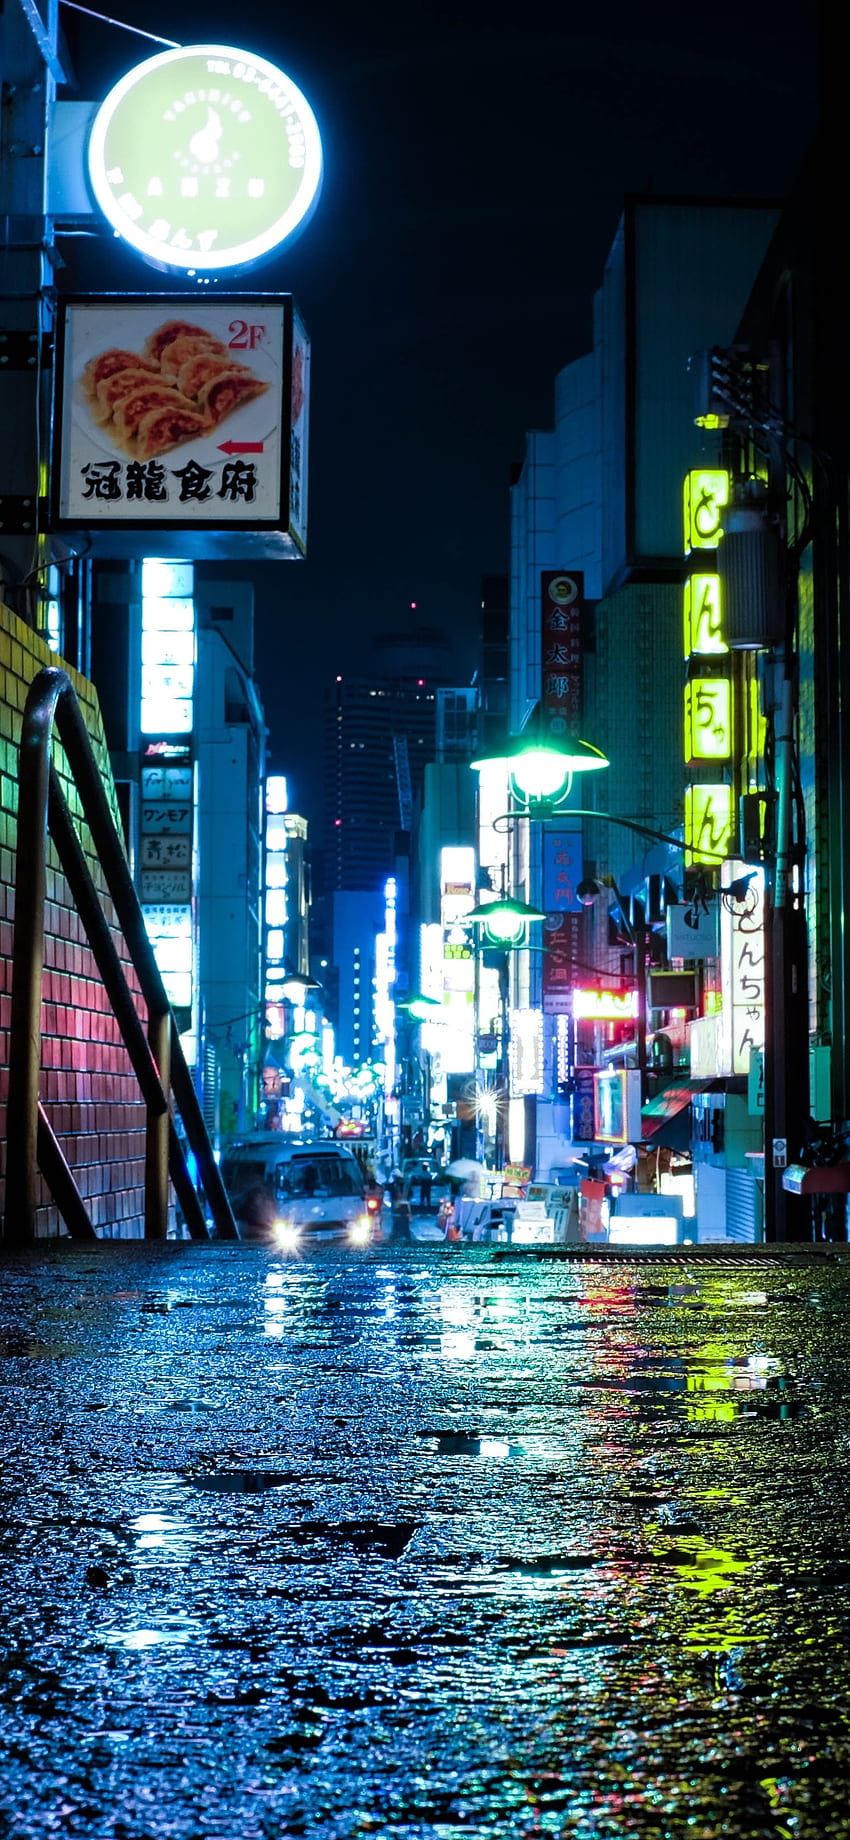 Đèn Neon Tokyo là biểu tượng của một nền văn hóa độc đáo và sáng tạo. Với những ánh sáng màu sắc rực rỡ, chúng ta có thể cảm nhận được sự sống động và hiện đại của thành phố Tokyo. Hình ảnh này chắc chắn sẽ làm say mê bất kỳ ai yêu thích văn hóa Nhật Bản. 